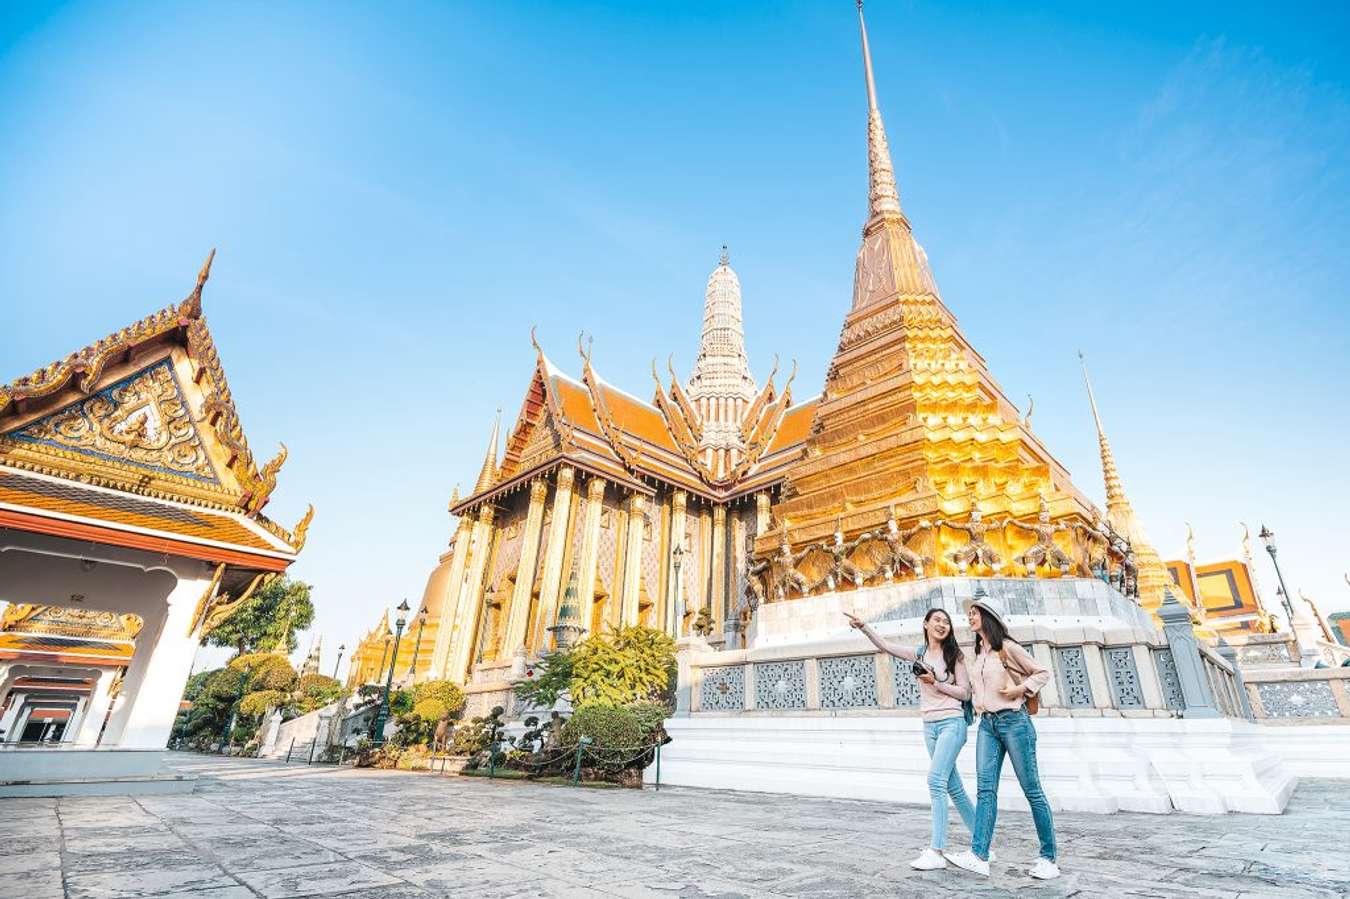 Chùa Phật Ngọc Thái Lan, hoặc Wat Phra Kaew, là ngôi chùa đặc biệt nổi tiếng với các tượng Phật lớn và đá quý đẹp mắt. Trong hành trình khám phá chùa, bạn sẽ được tìm hiểu về những đặc trưng của kiến trúc Thái Lan, trọn vẹn từ A-Z, và thưởng ngoạn sức hút đầy mê hoặc của vẻ đẹp tâm linh.